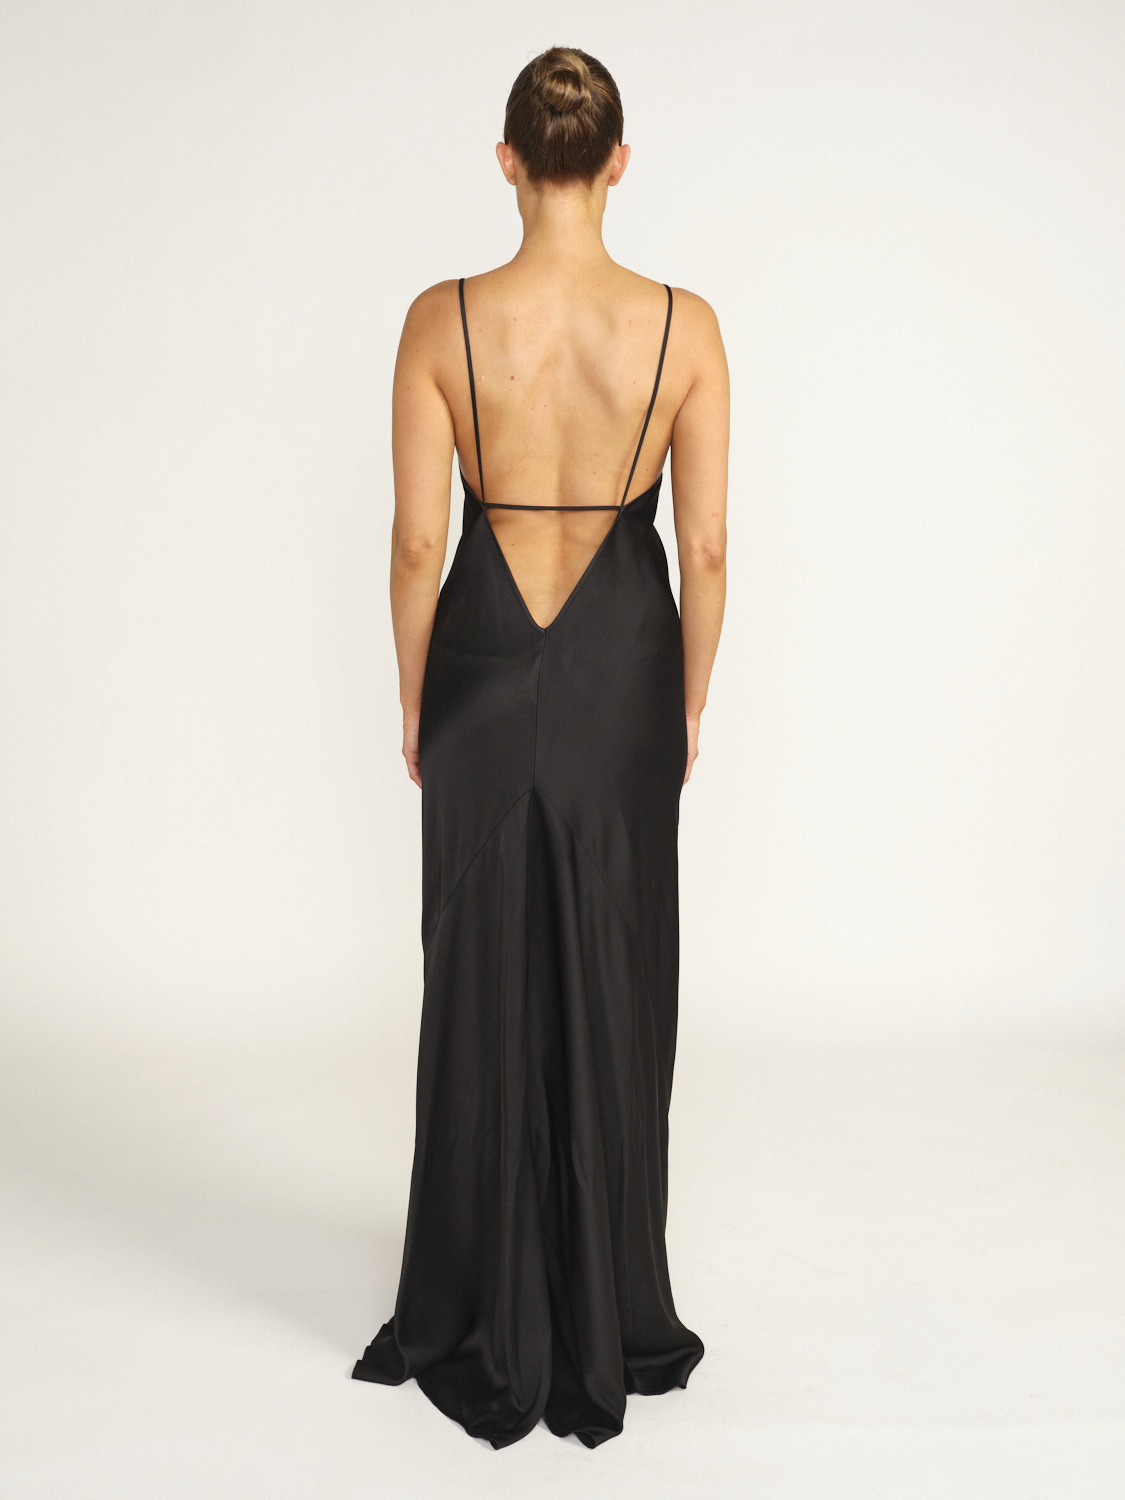 Victoria Beckham Floor Length Cami Dress – Bodenlanges Kleid aus fließendem Stoff schwarz 34